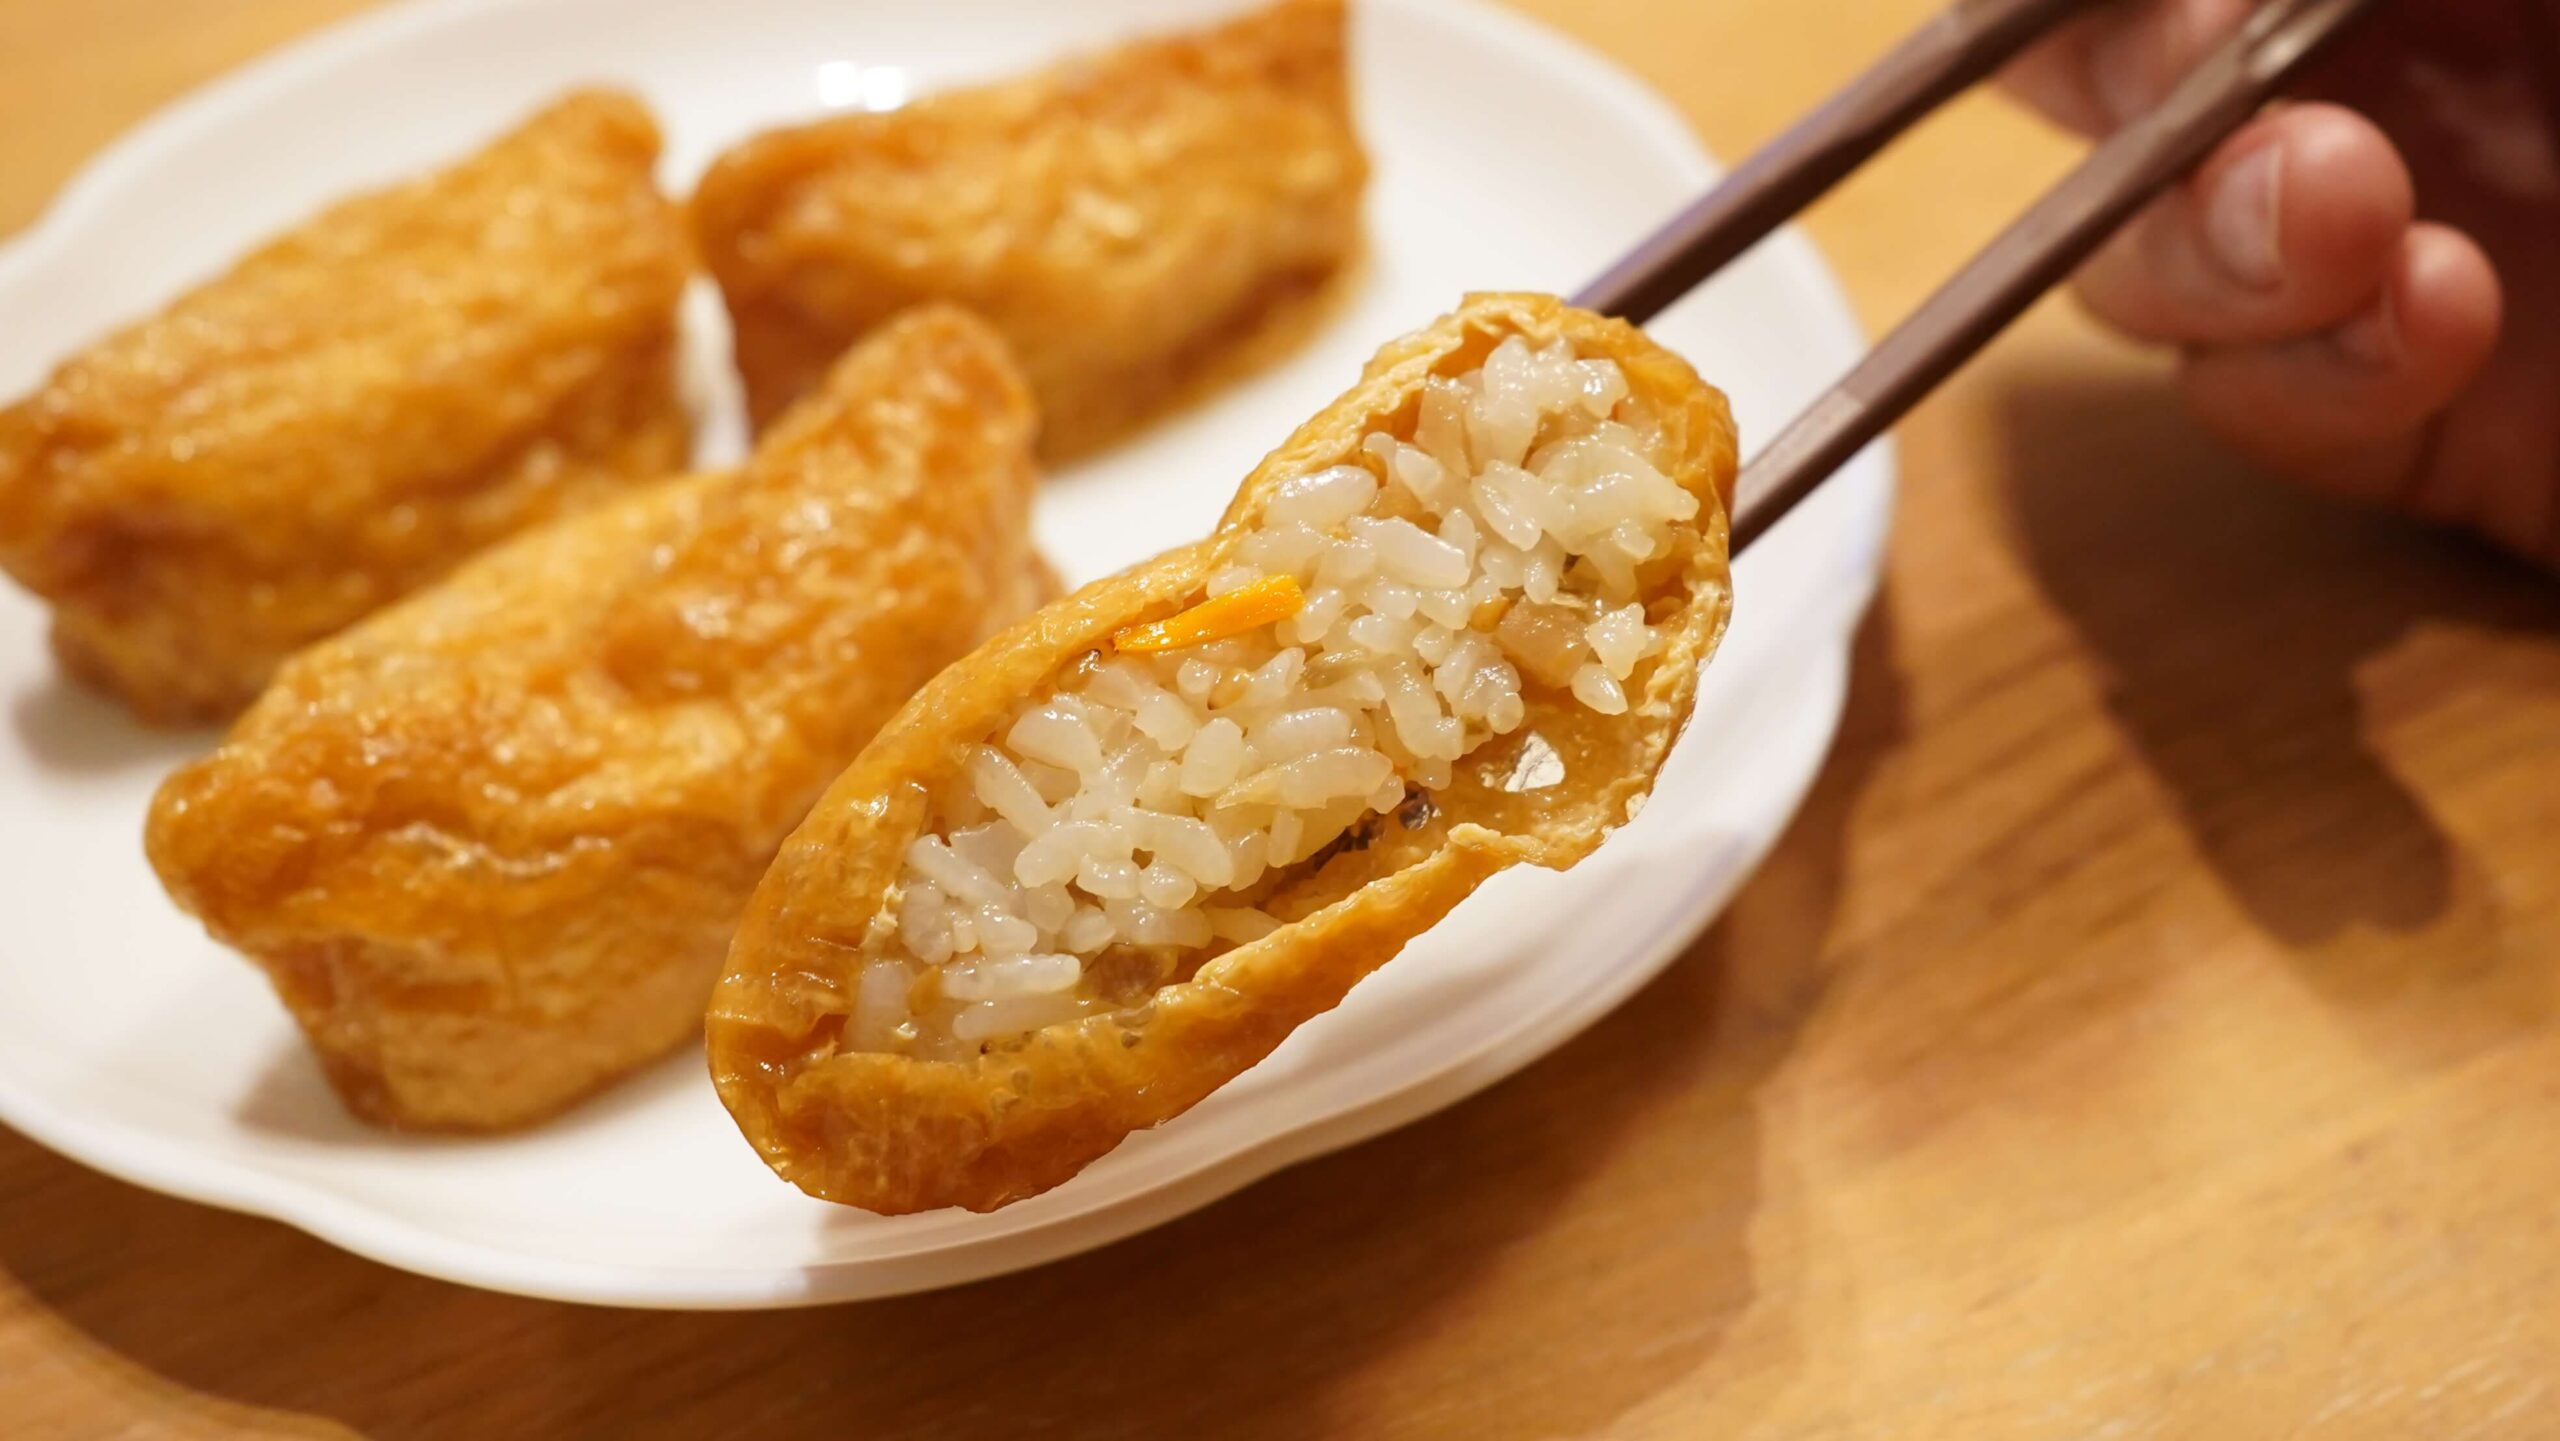 「ごはんの里」の冷凍食品「五目いなり寿司」のお米の拡大写真